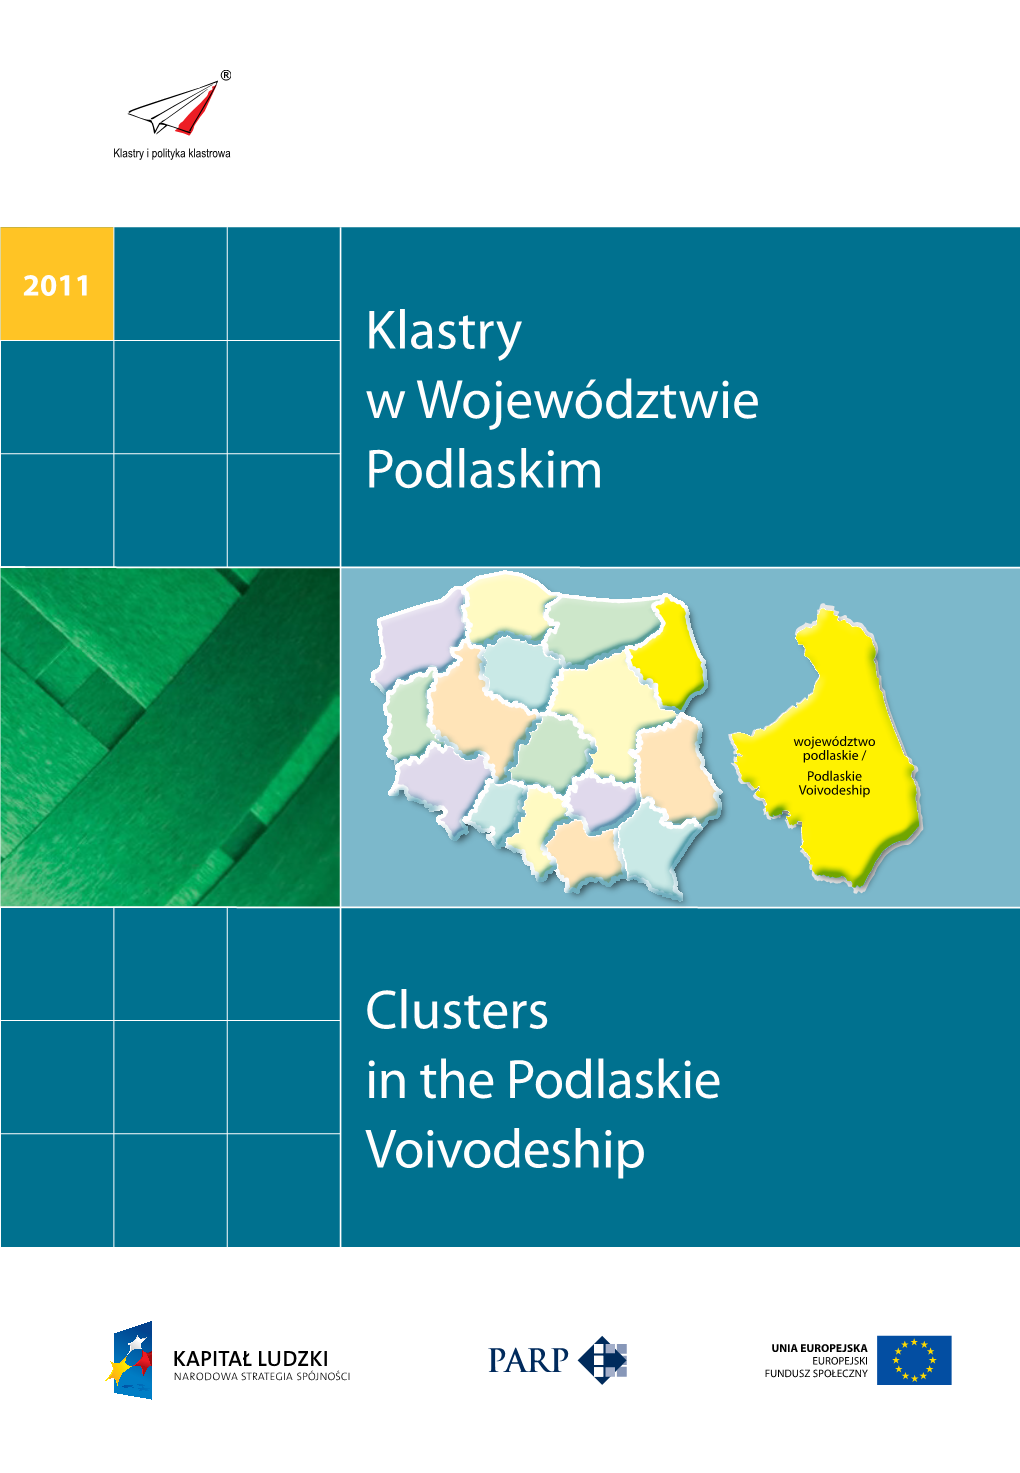 Klastry W Województwie Podlaskim Clusters in the Podlaskie Voivodeship